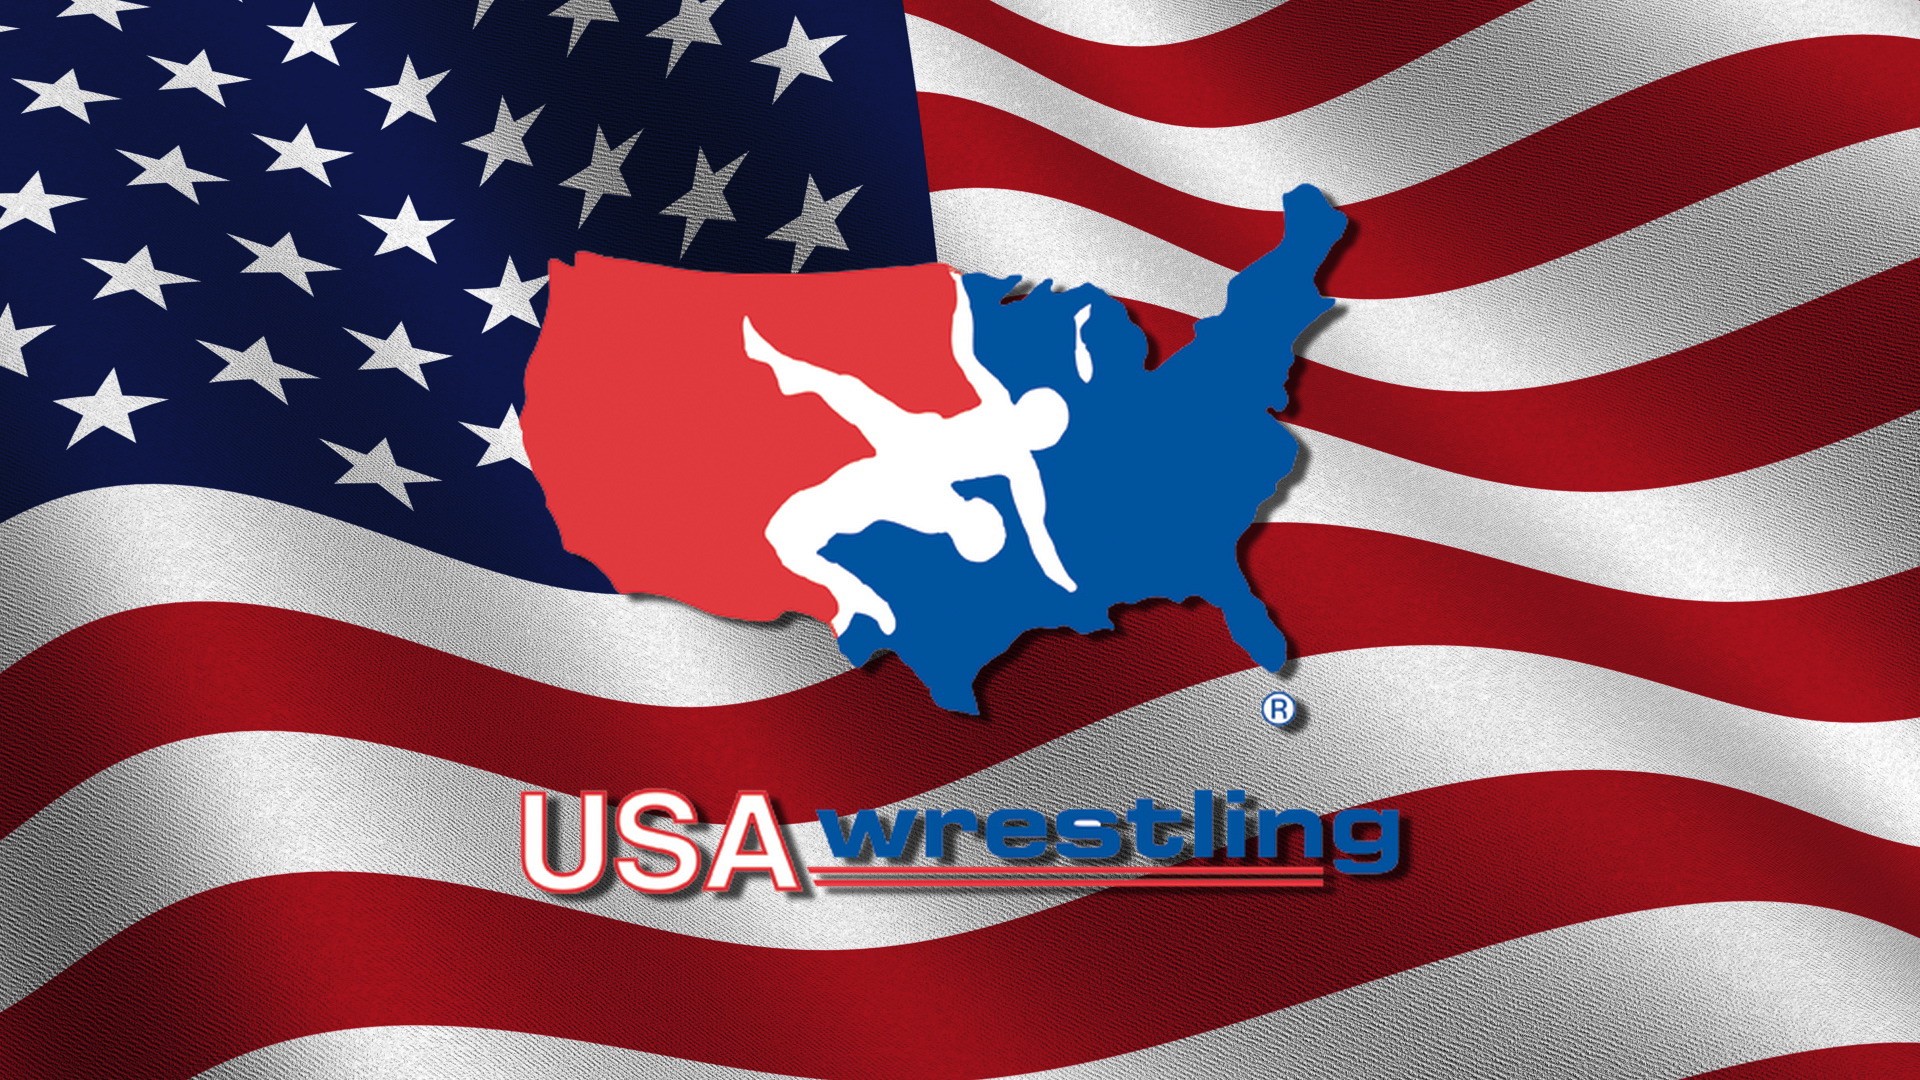 usa wrestling clip art - photo #31